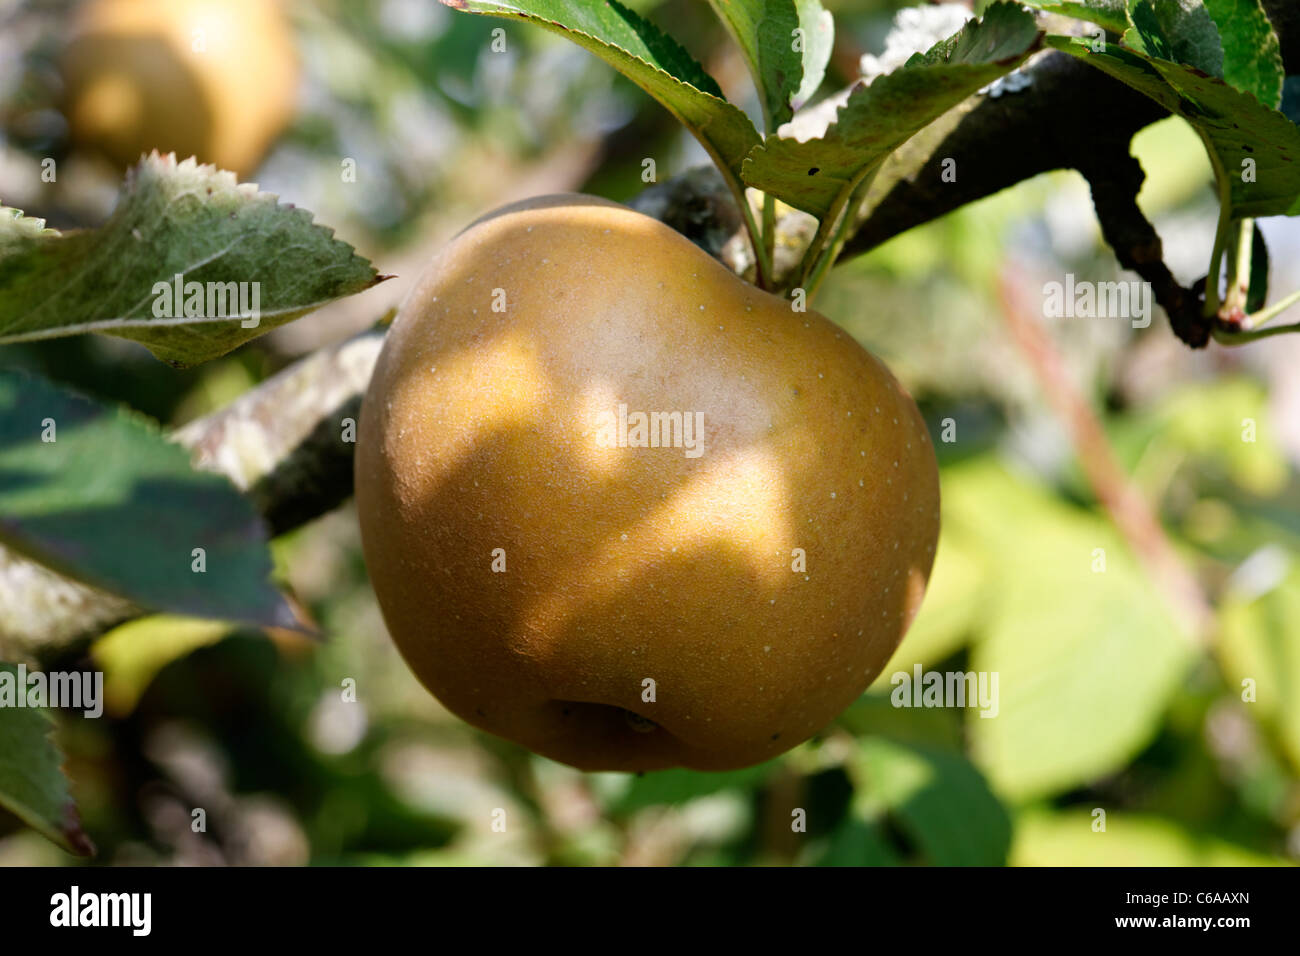 Russet apple (Reinette grise du Canada), Suzanne 's garden, Le Pas, Mayenne, Pays de la Loire, France). Stock Photo